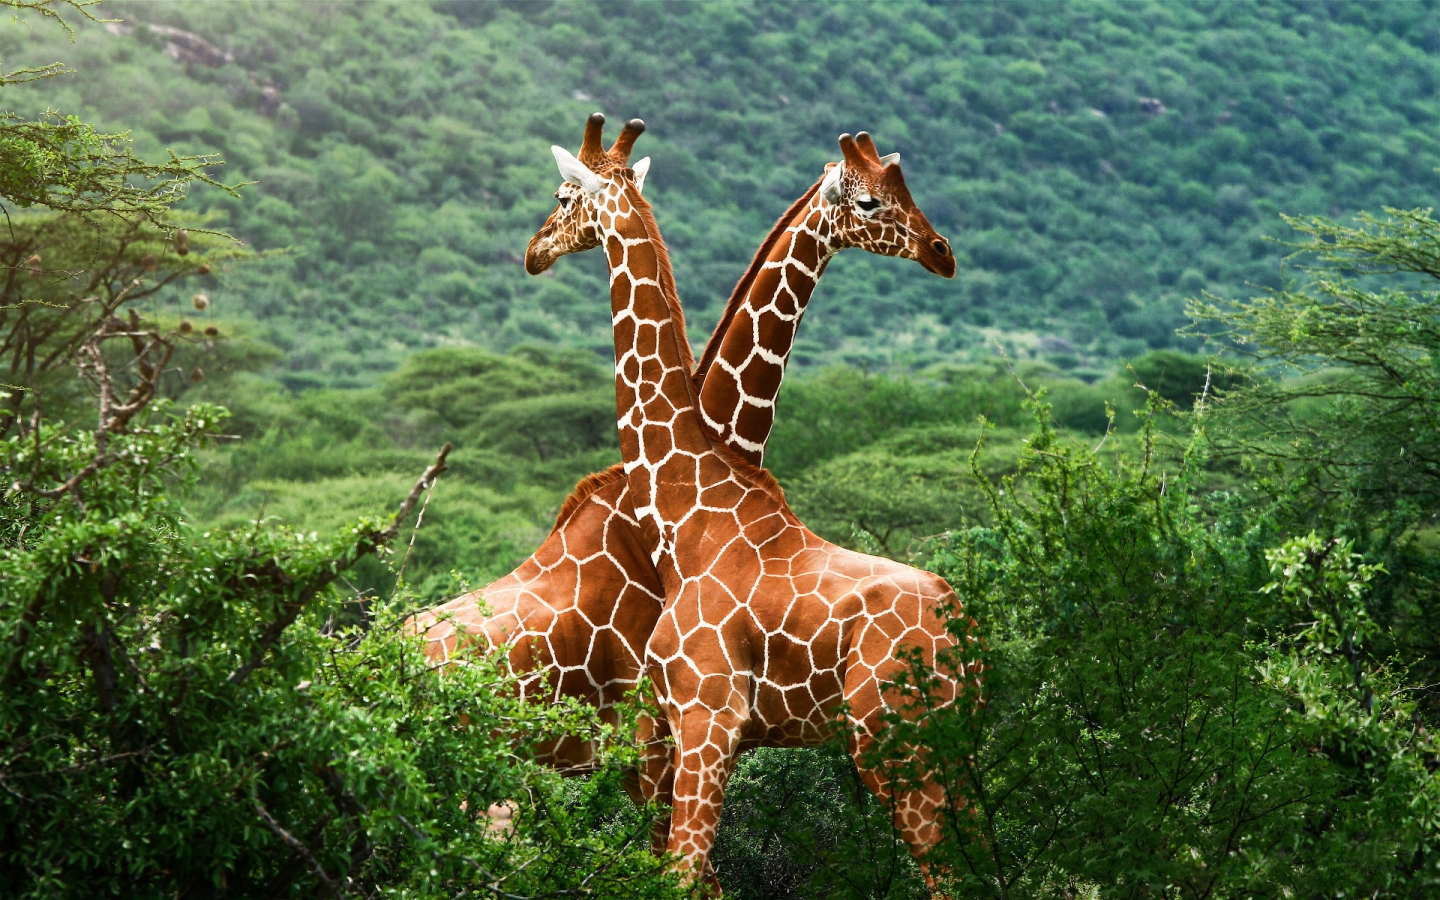 Giraffe Friends for 1440 x 900 widescreen resolution